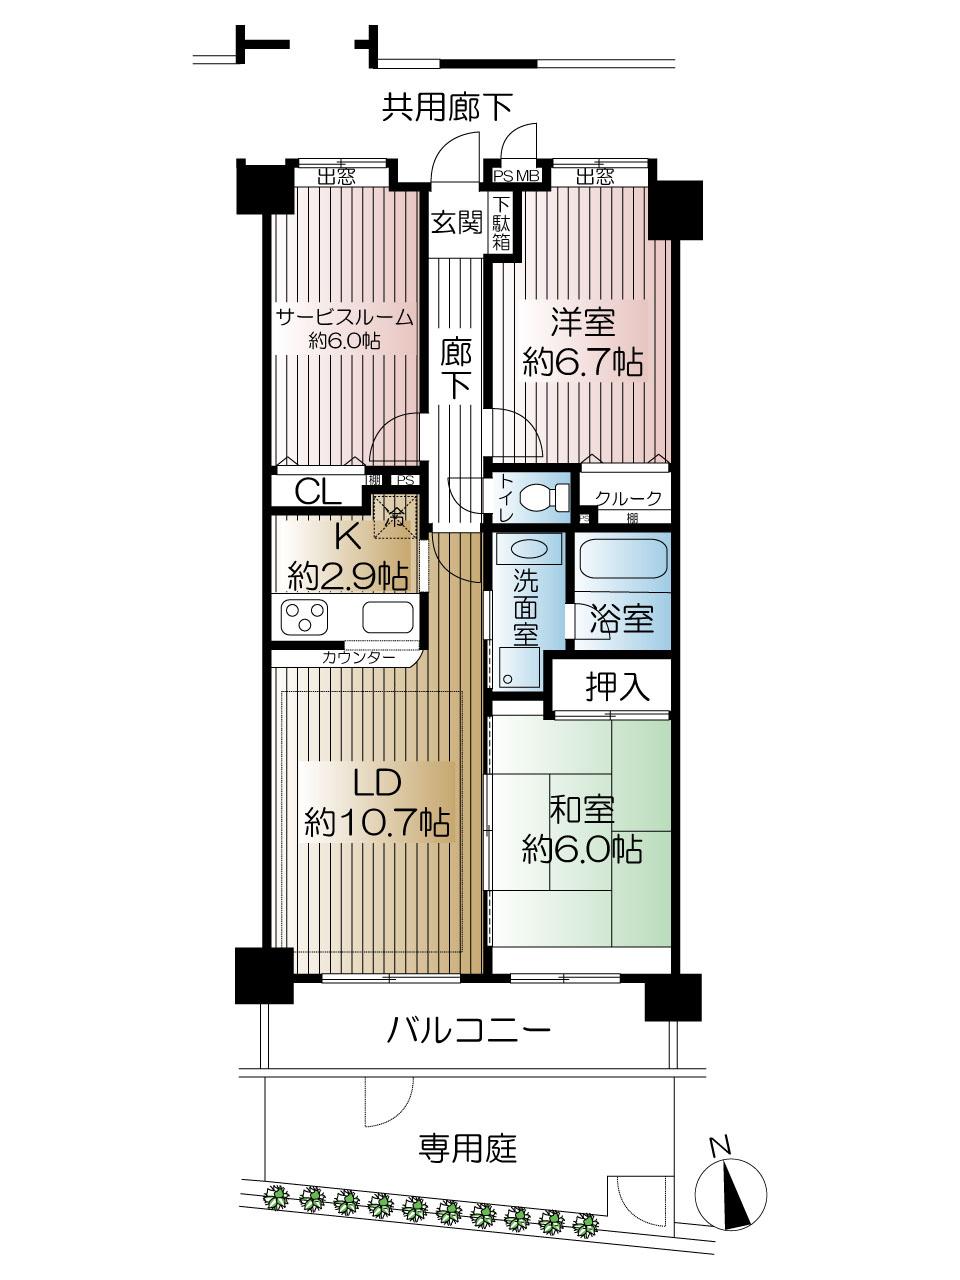 Floor plan. 2LDK + S (storeroom), Price 25,800,000 yen, Footprint 69.6 sq m , Balcony area 8.55 sq m